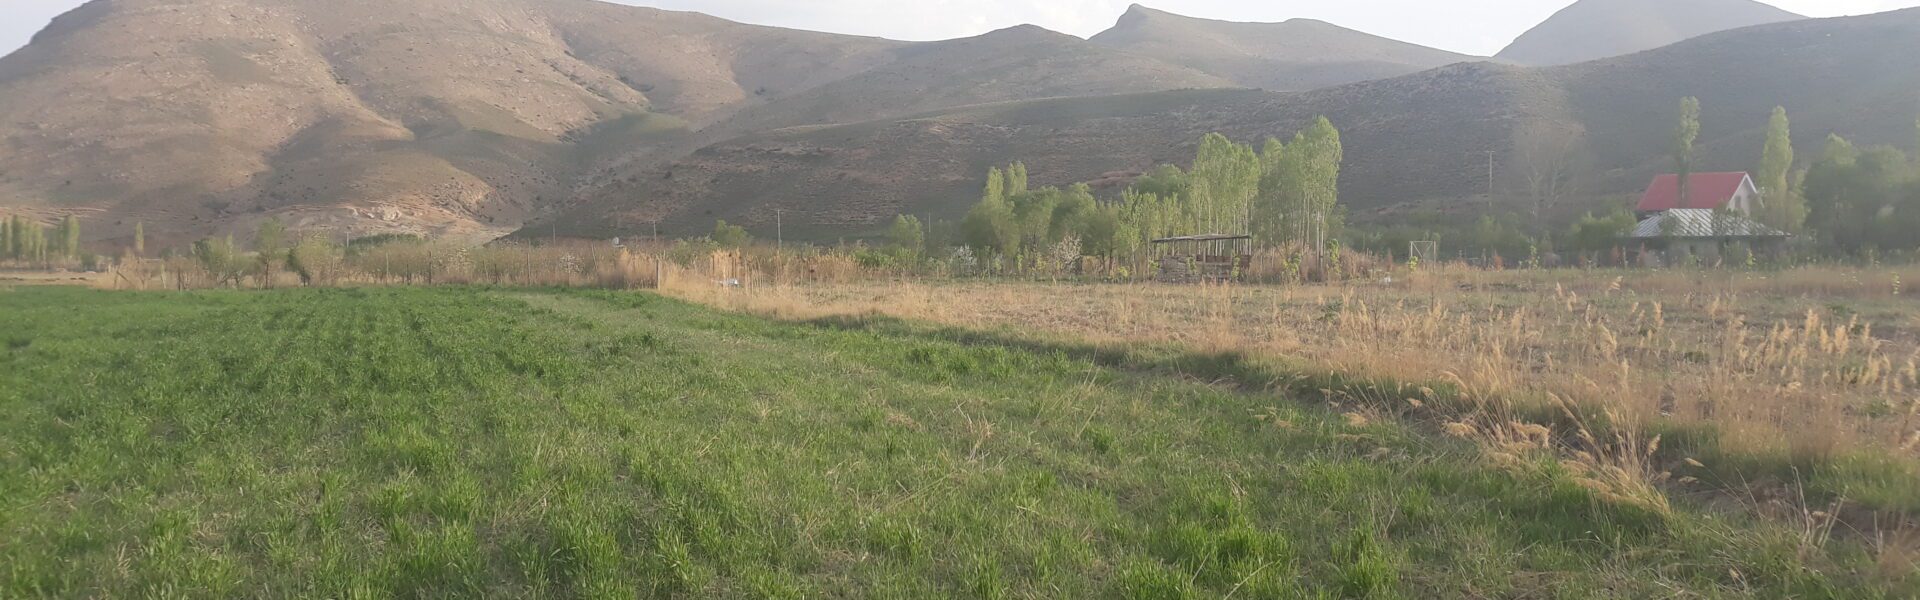 زمین روستای طارس فیروزکوه